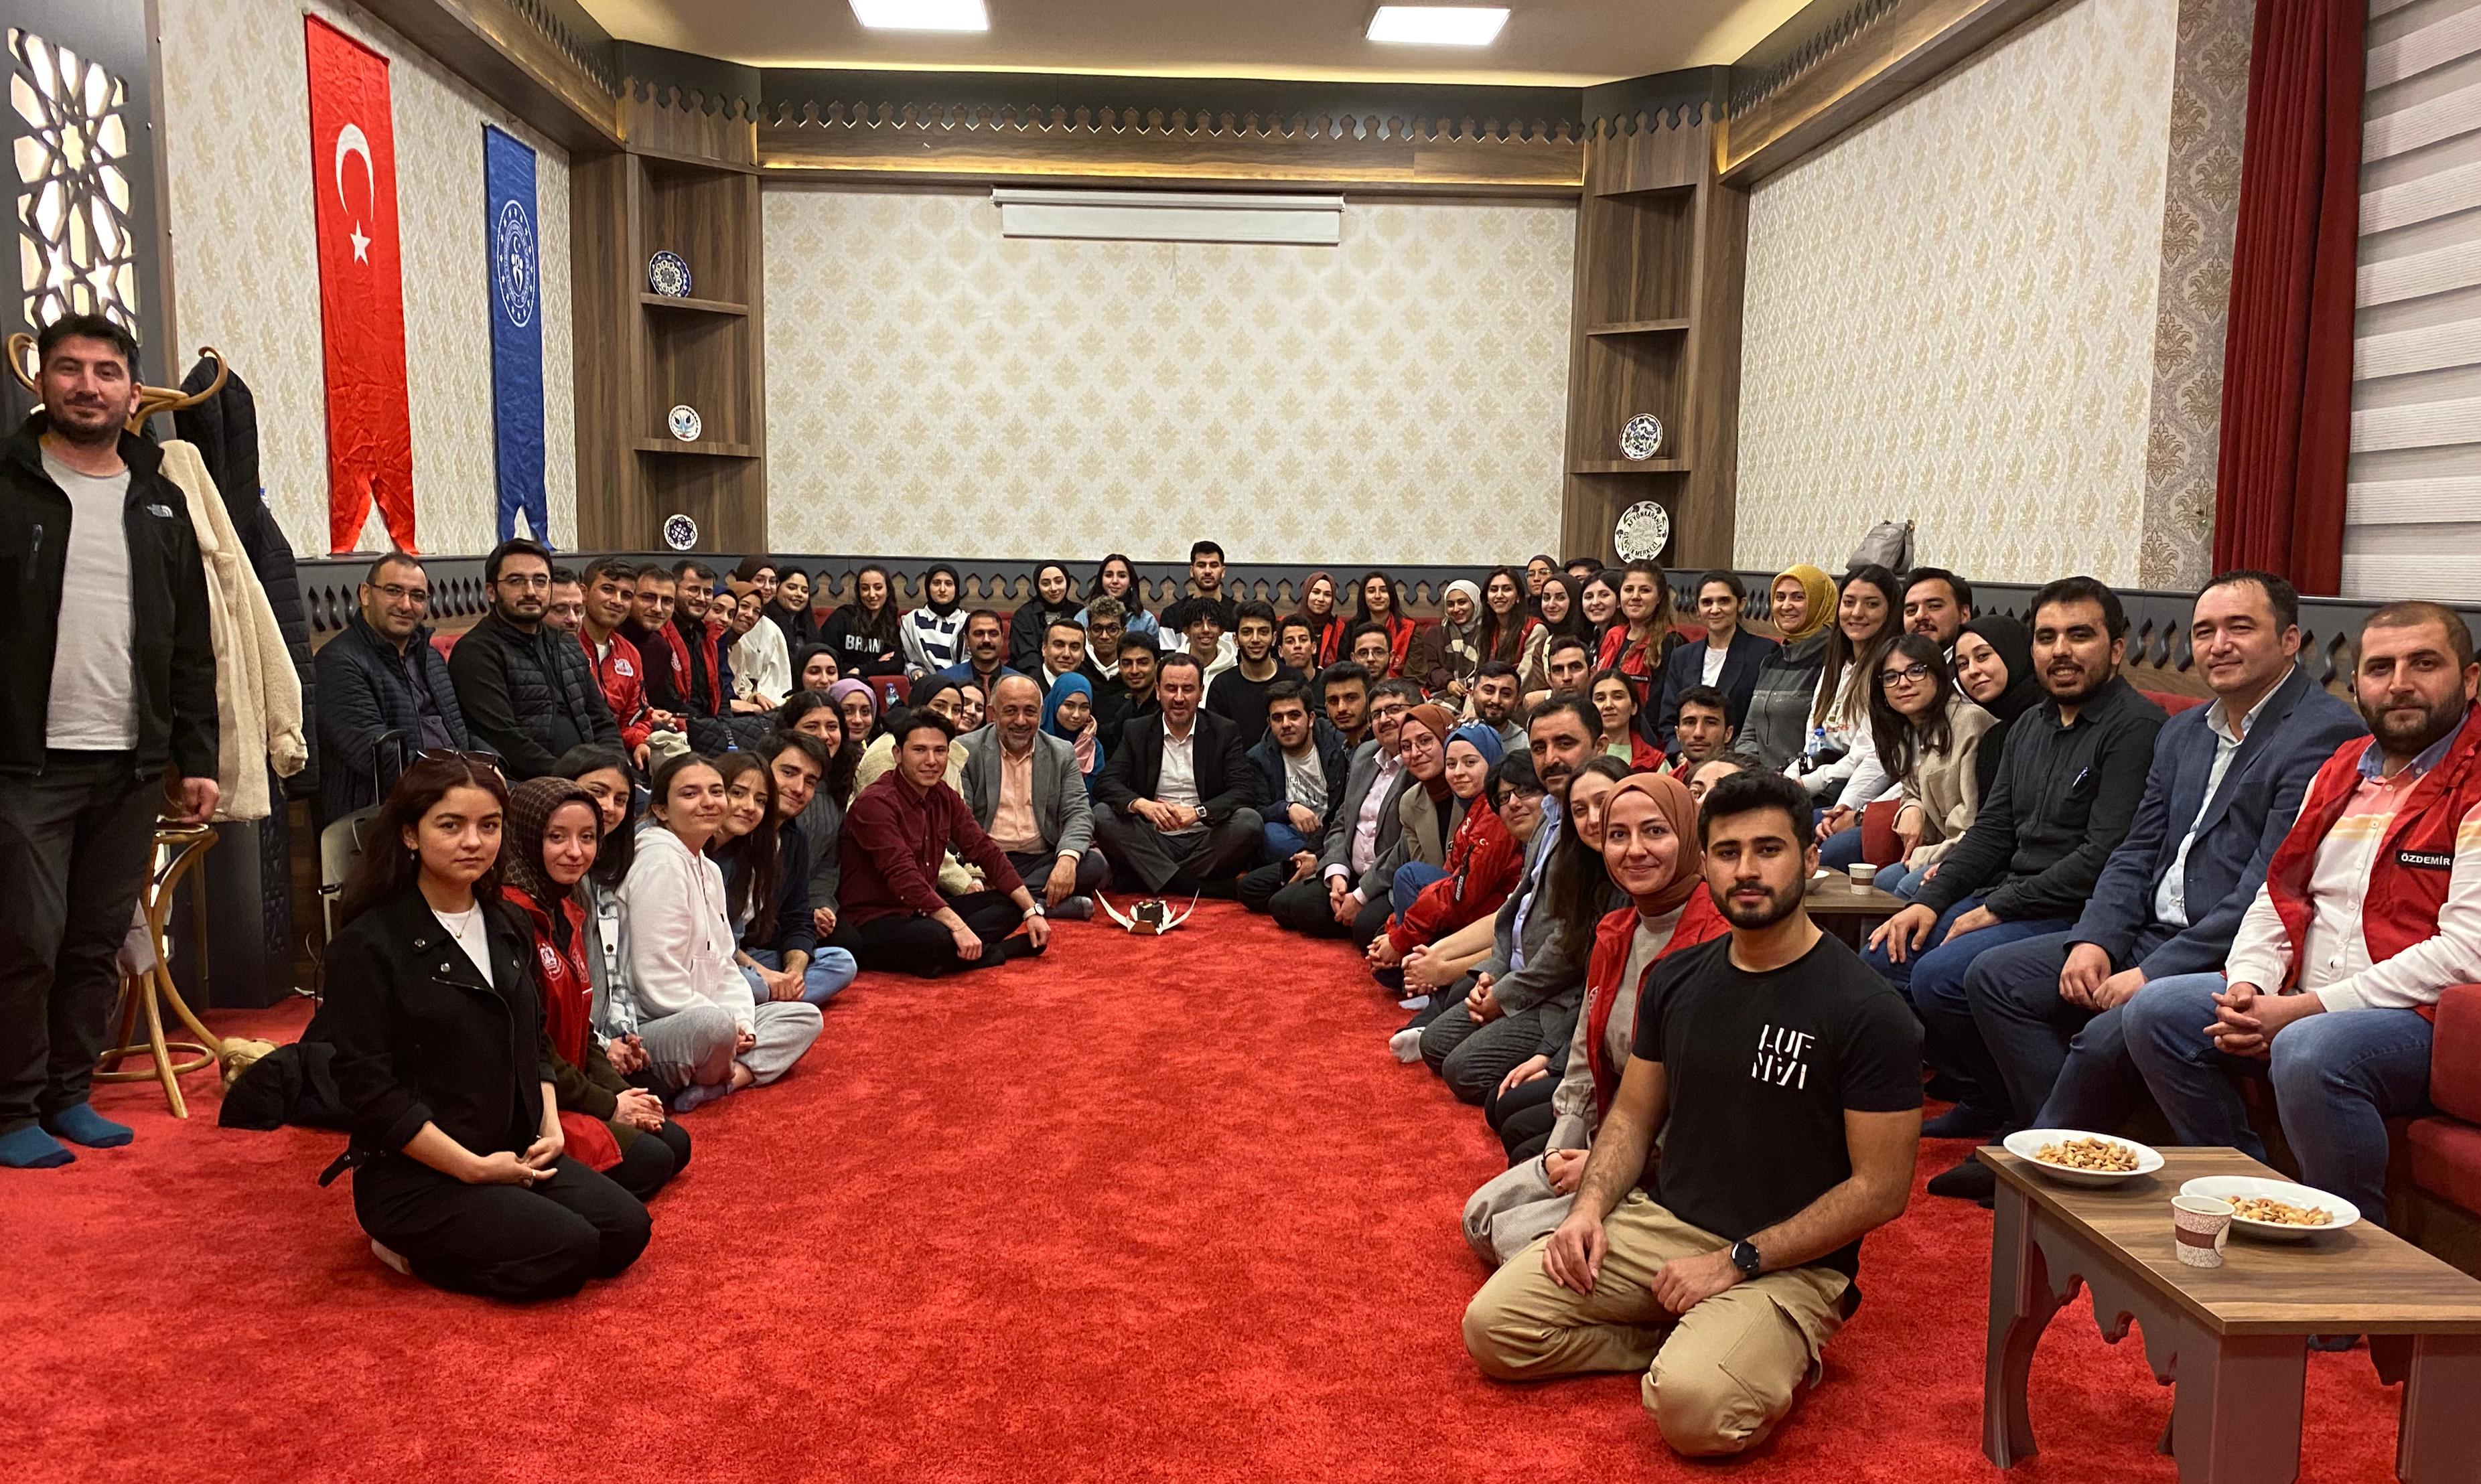 Afyonkarahisar Gençlik Merkezinde 400 kişinin katılımıyla iftar programı düzenlendi